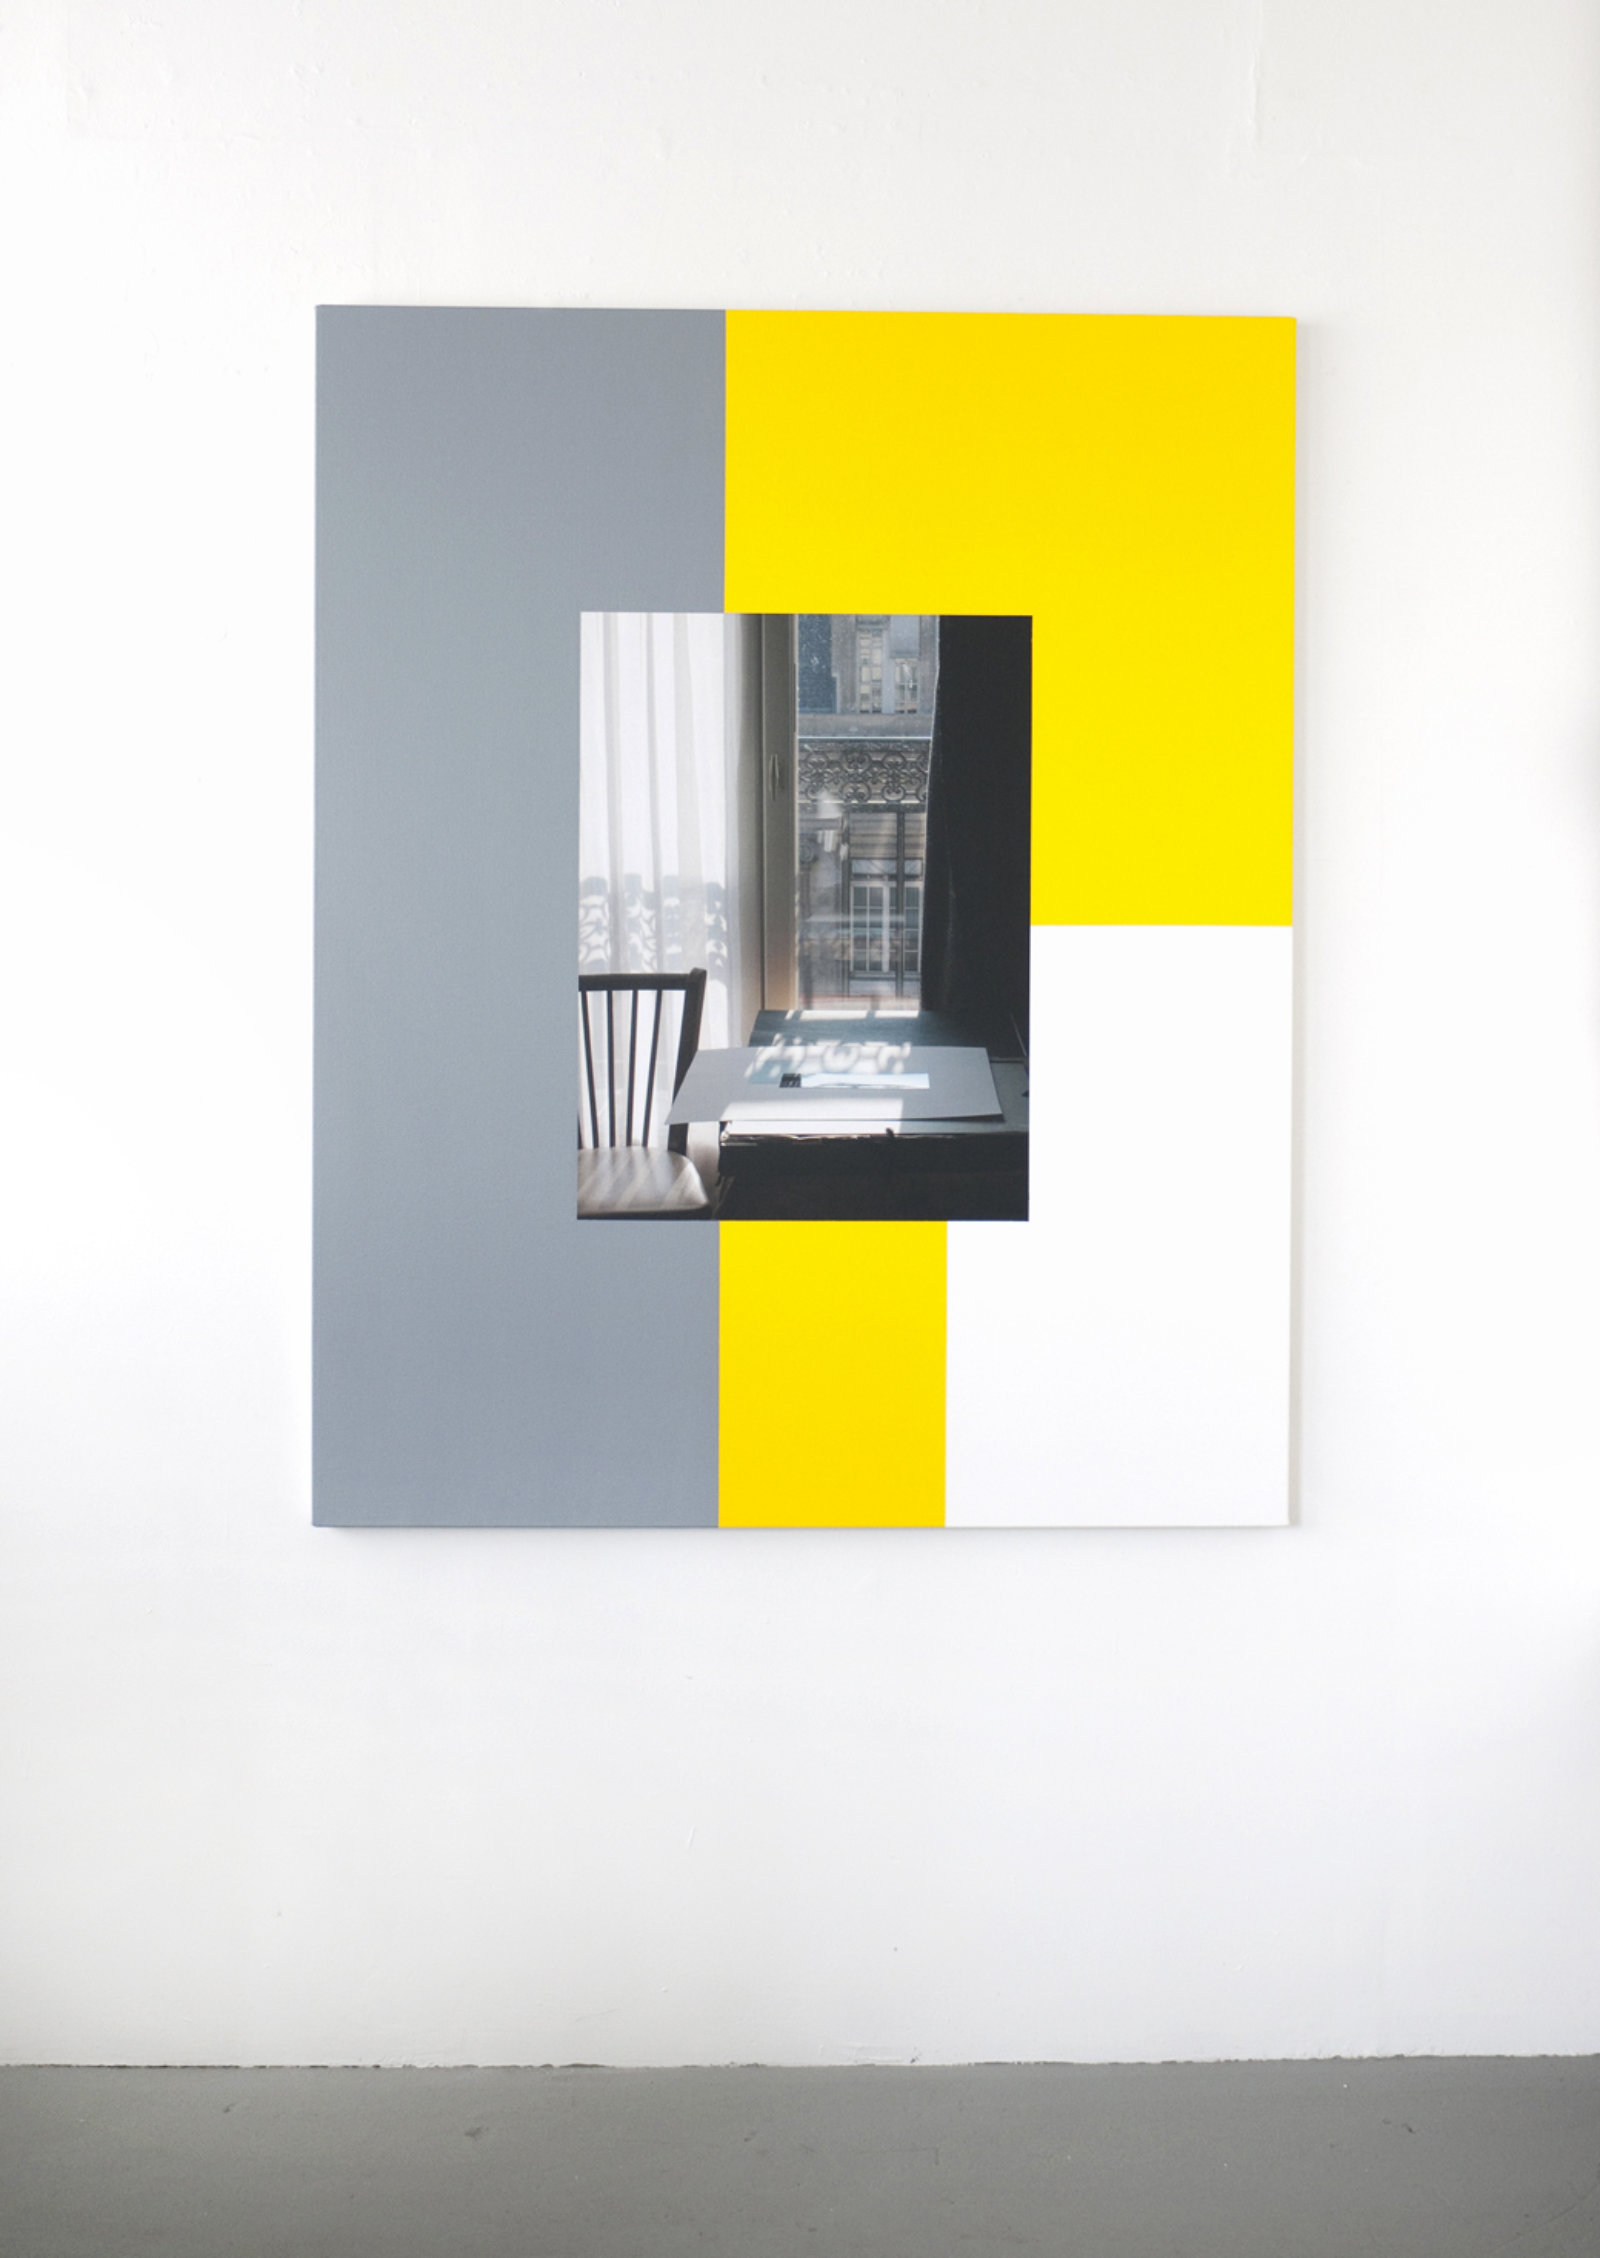 Ian Wallace, Hotel Rivoli (22 November 2003) I, 2012, photolaminate and acrylic on canvas, 60 x 48 in. (153 x 122 cm)